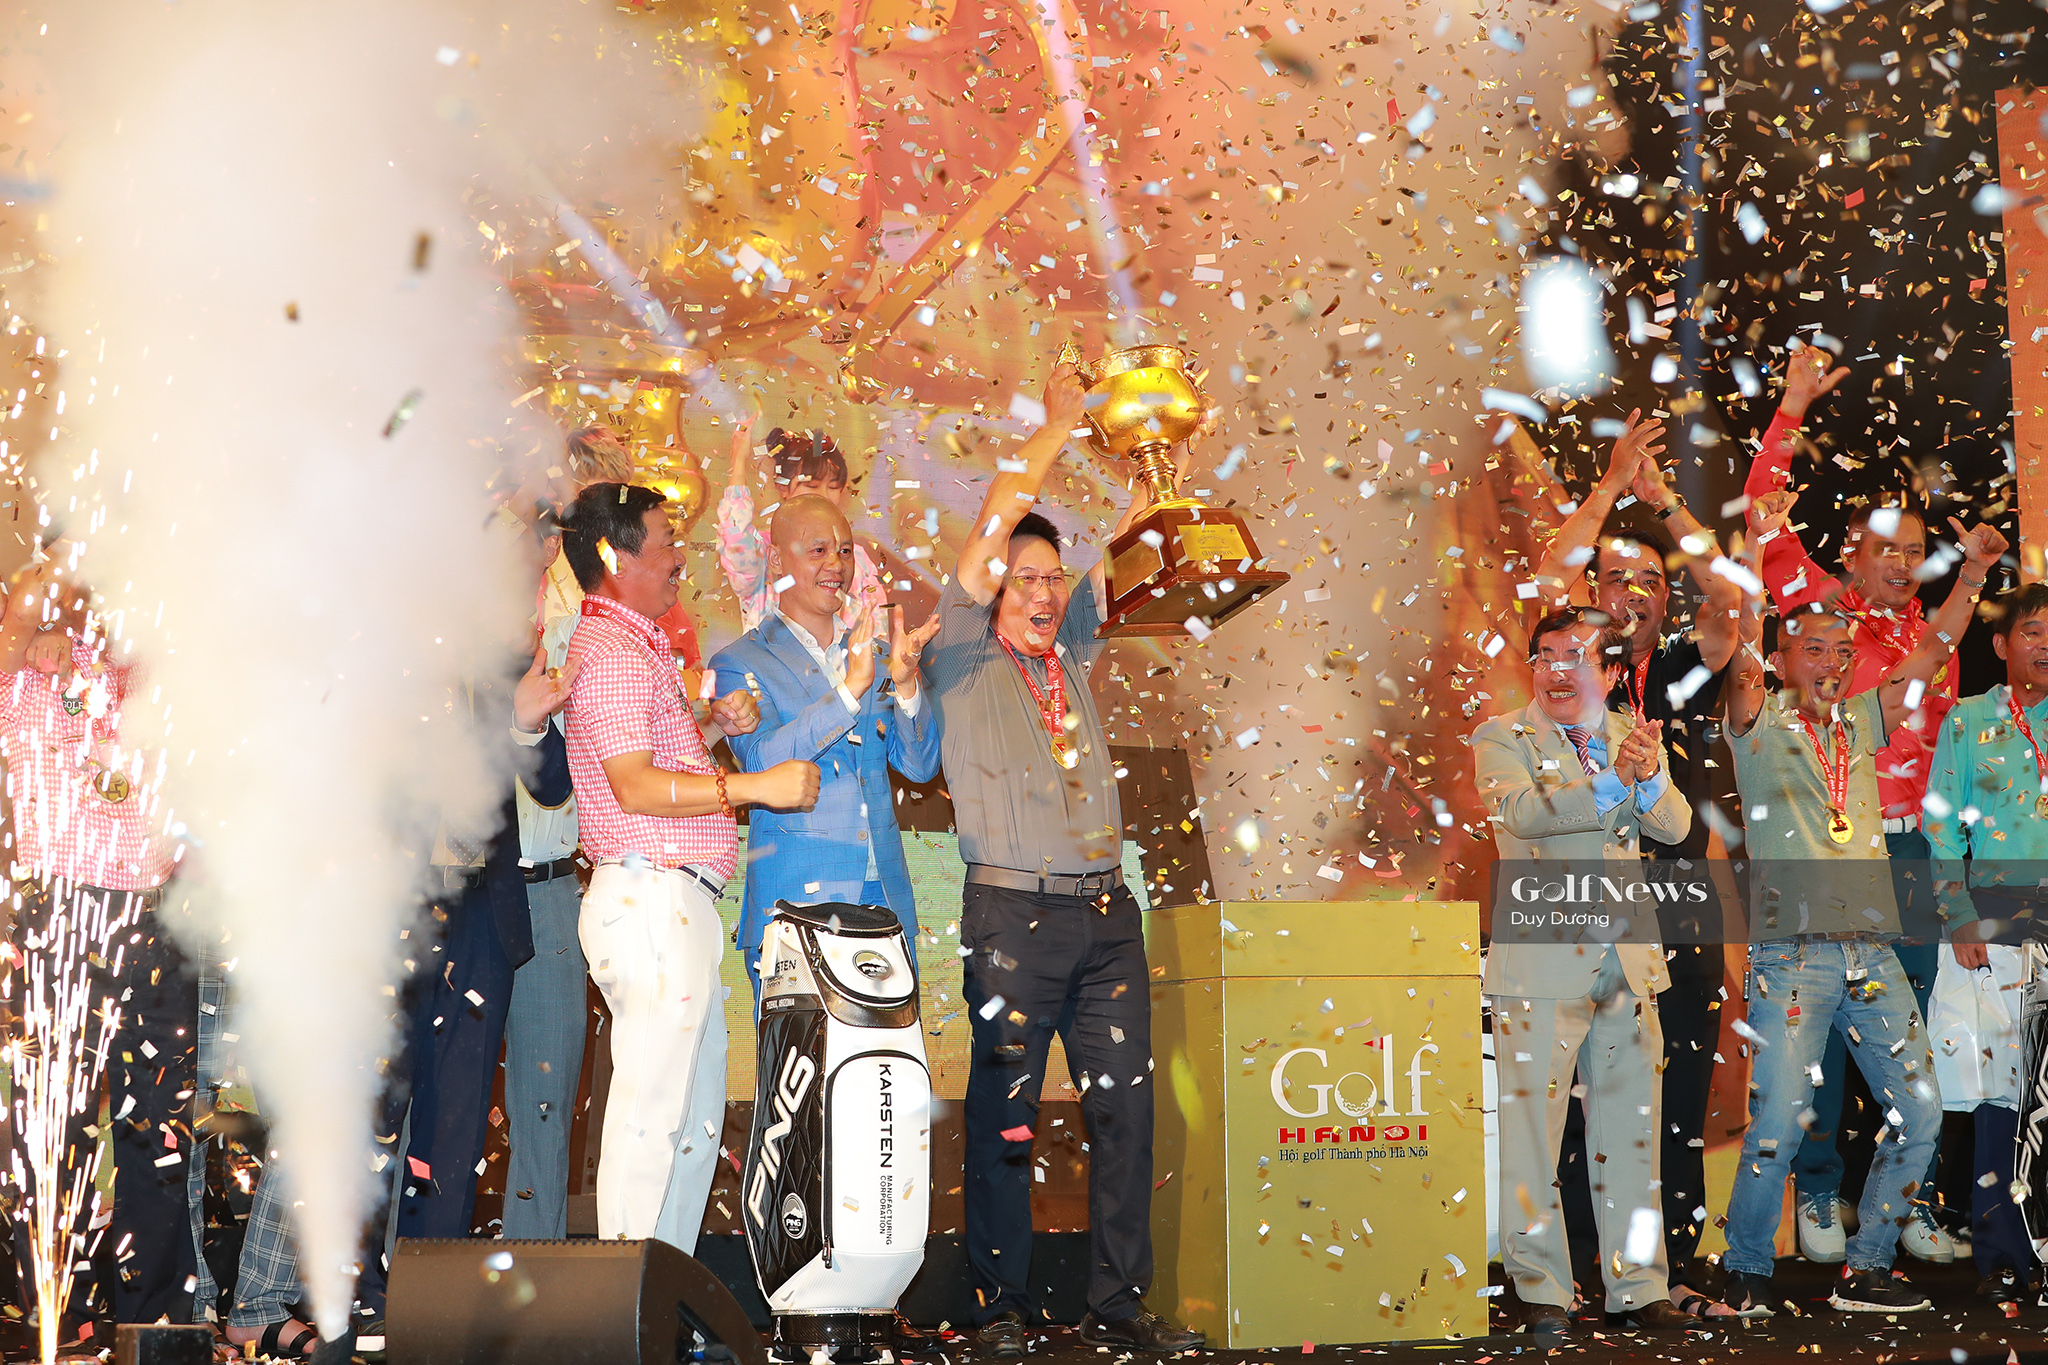 KB Cầu Giấy ghi danh vào lịch sử giải Vô địch các CLB Golf Hà Nội với lần thứ 2 vô địch.